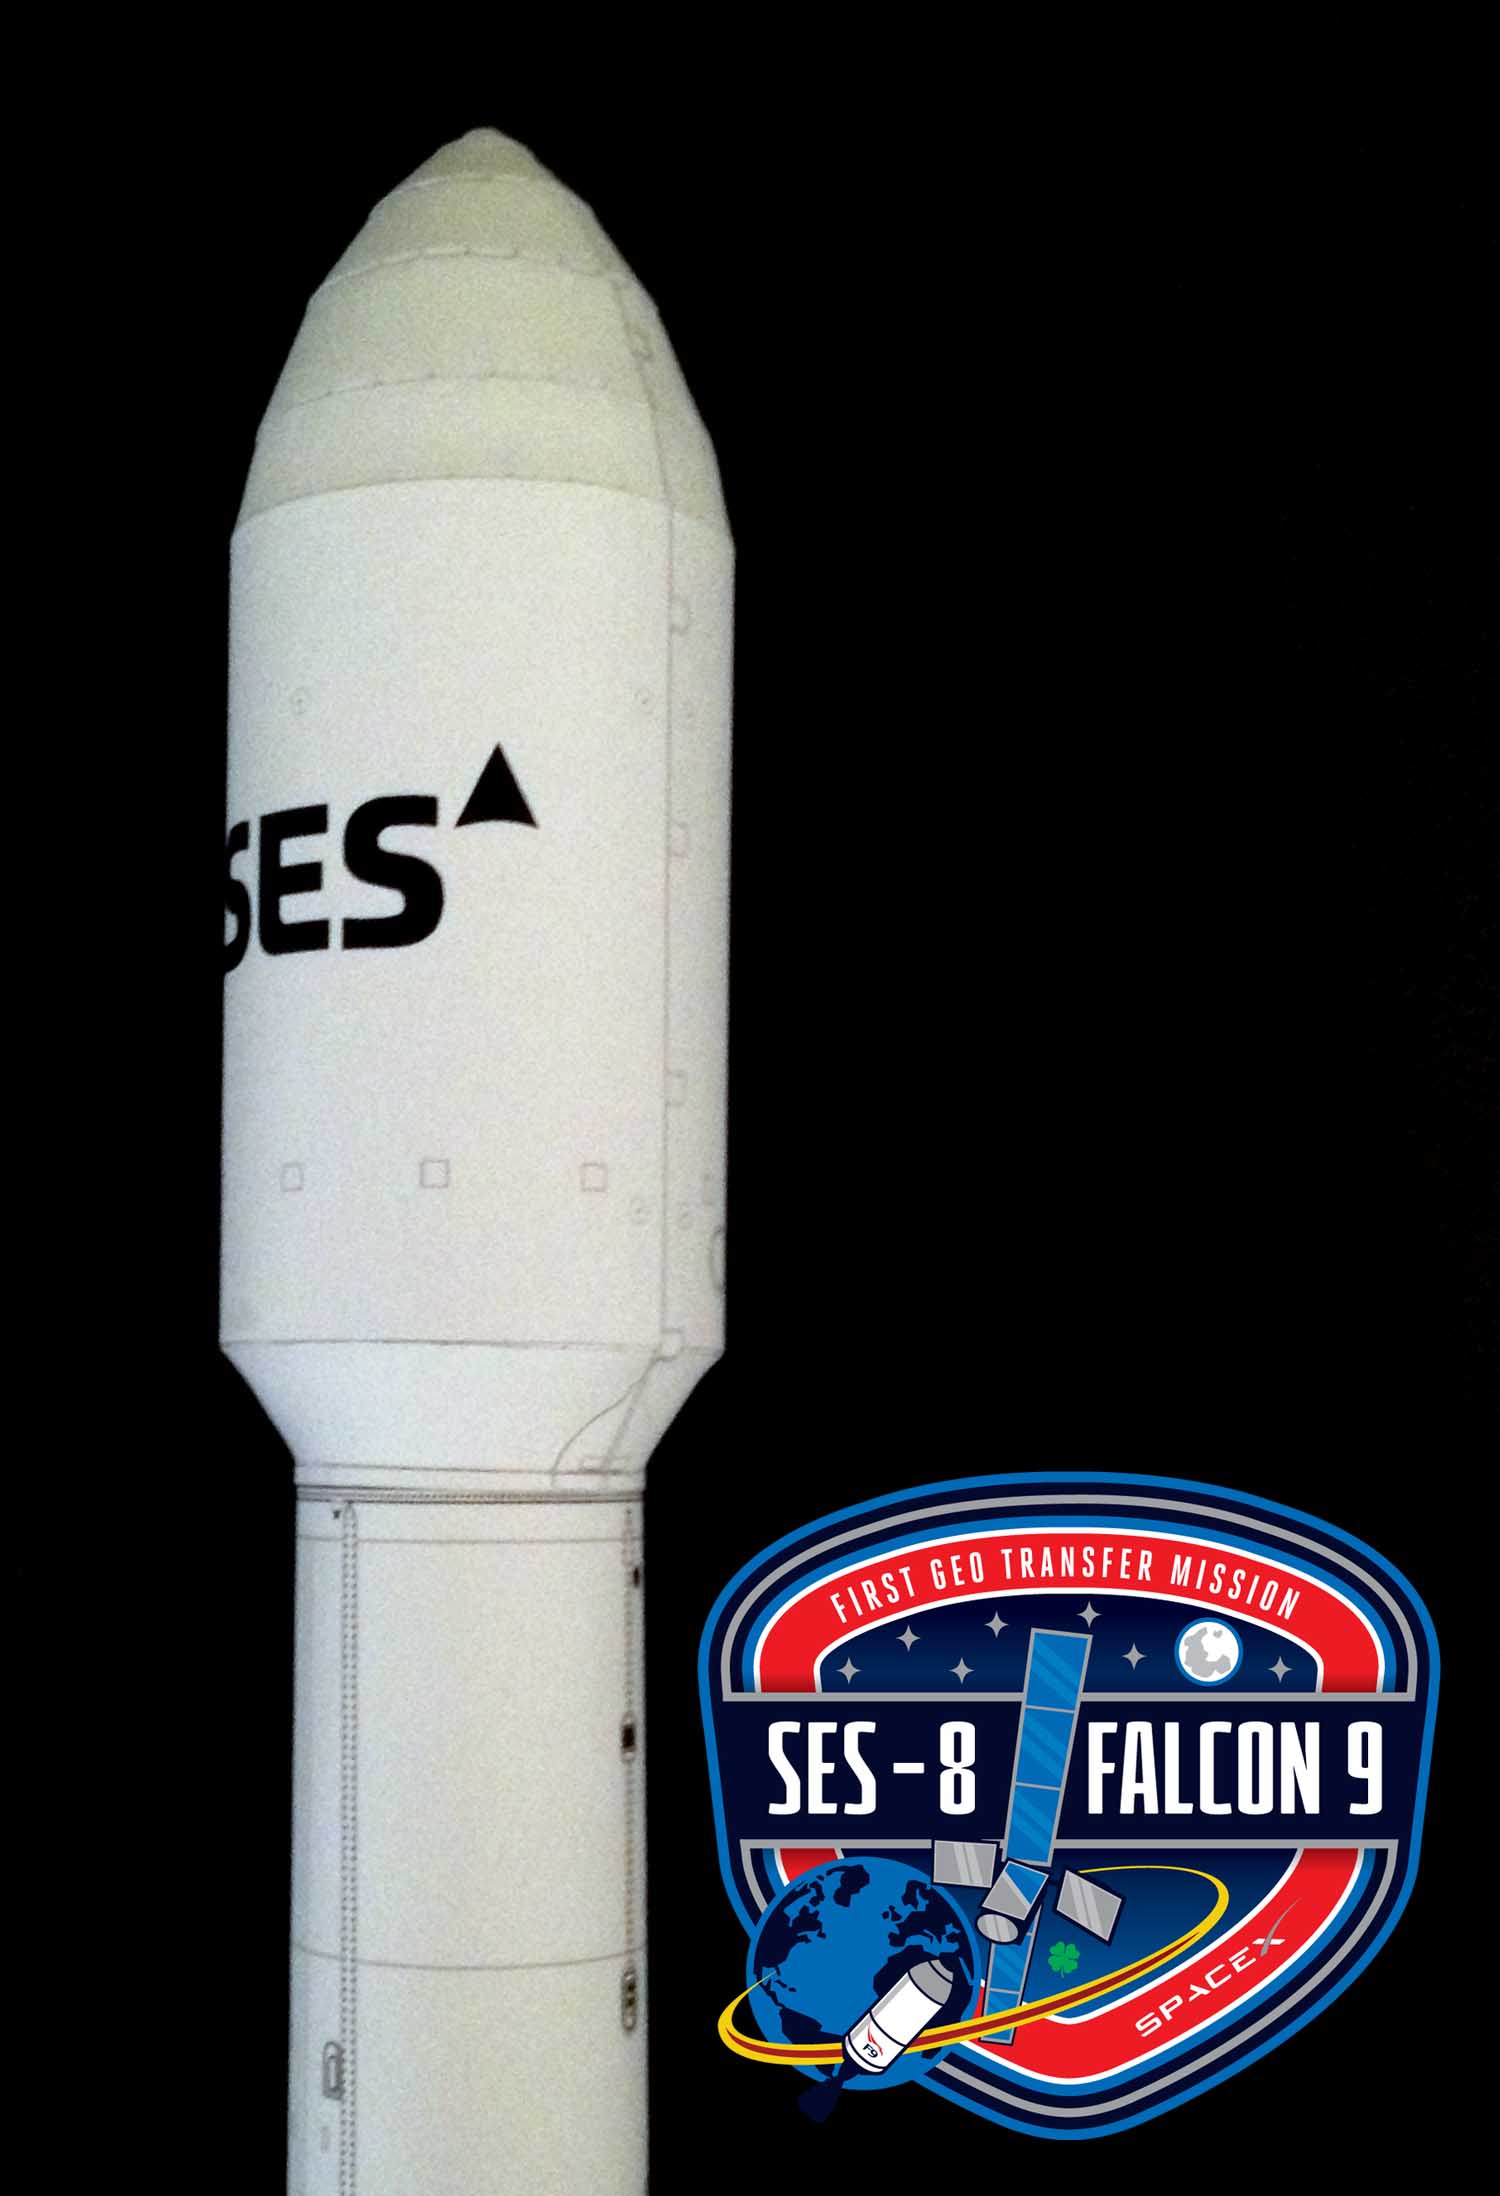 Falcon 9 SES-8-image